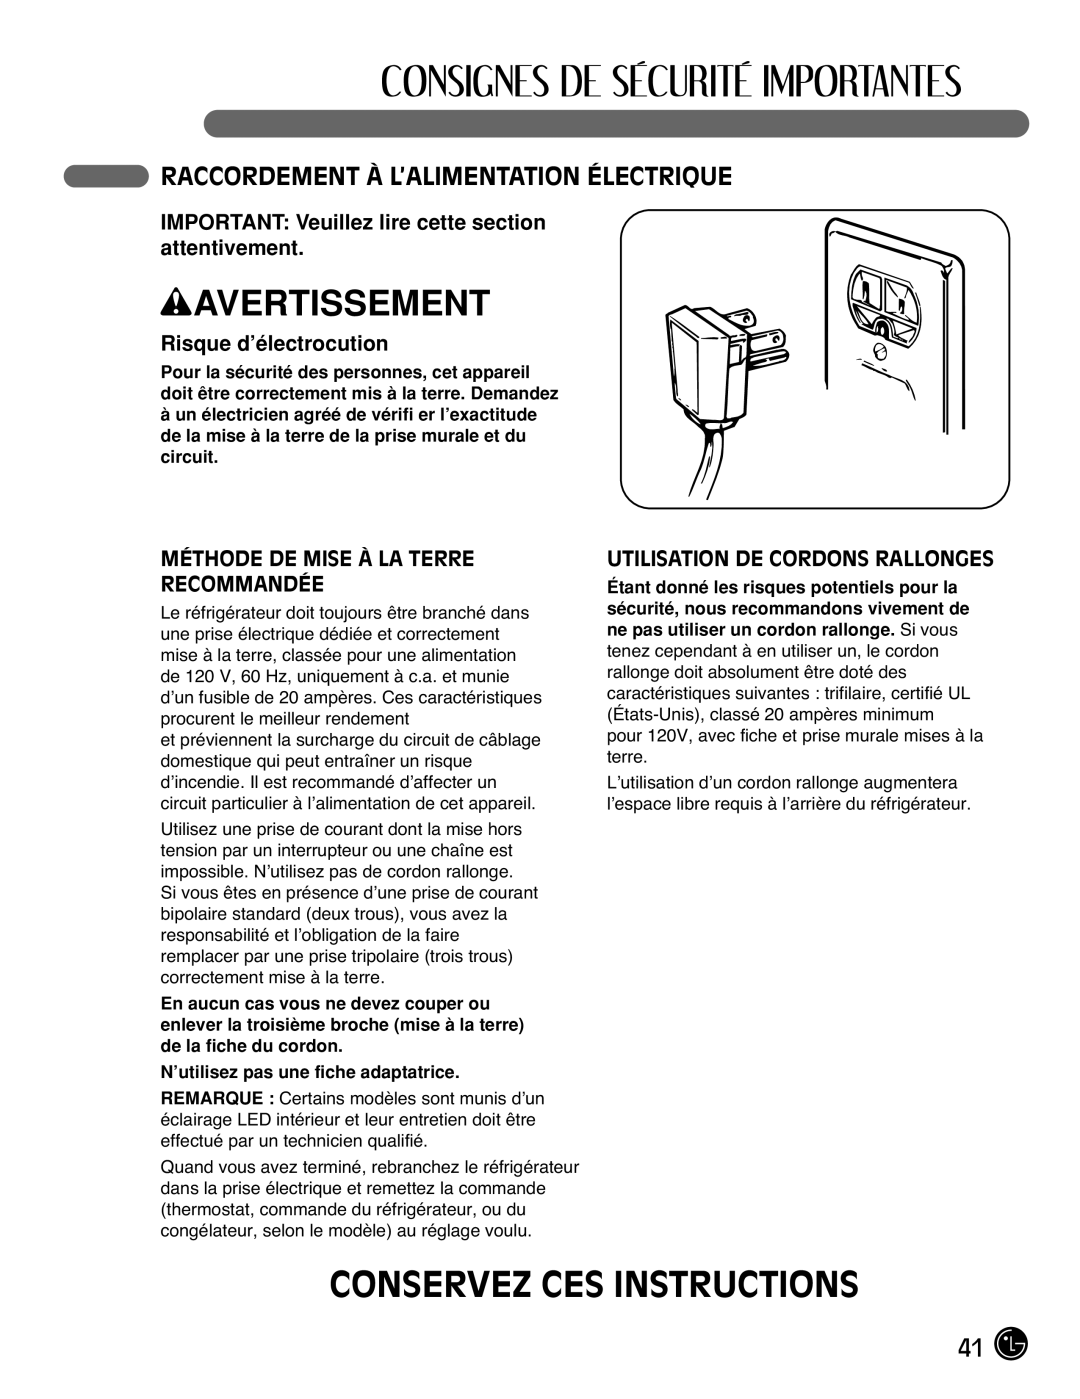 LG Electronics LFC25770 manual Conservez Ces Instructions, Raccordement À L’Alimentation Électrique, Risque d’électrocution 